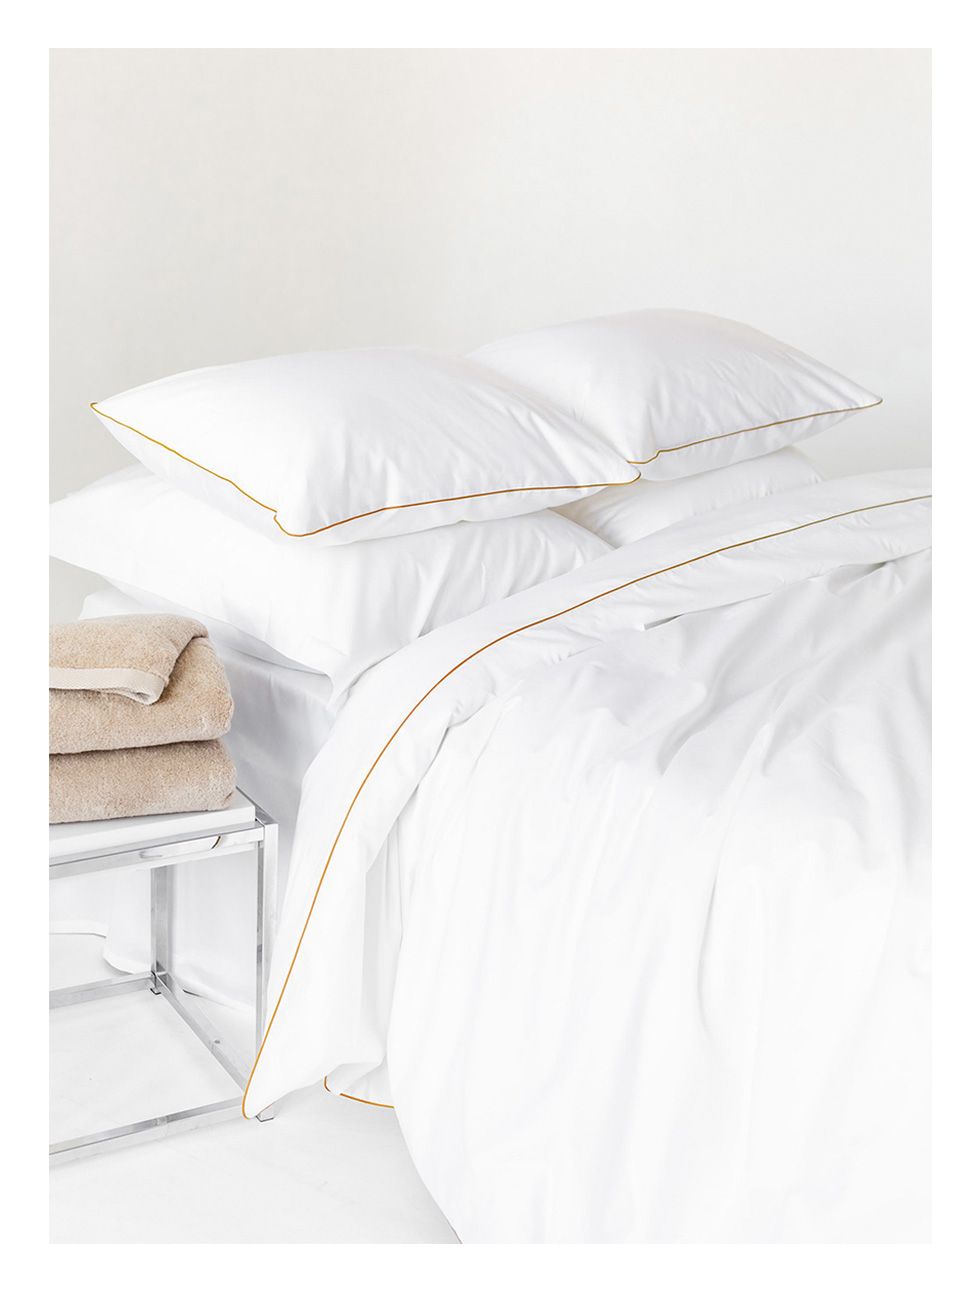 Комплект постельного белья Евро комплект Rim White&Gold